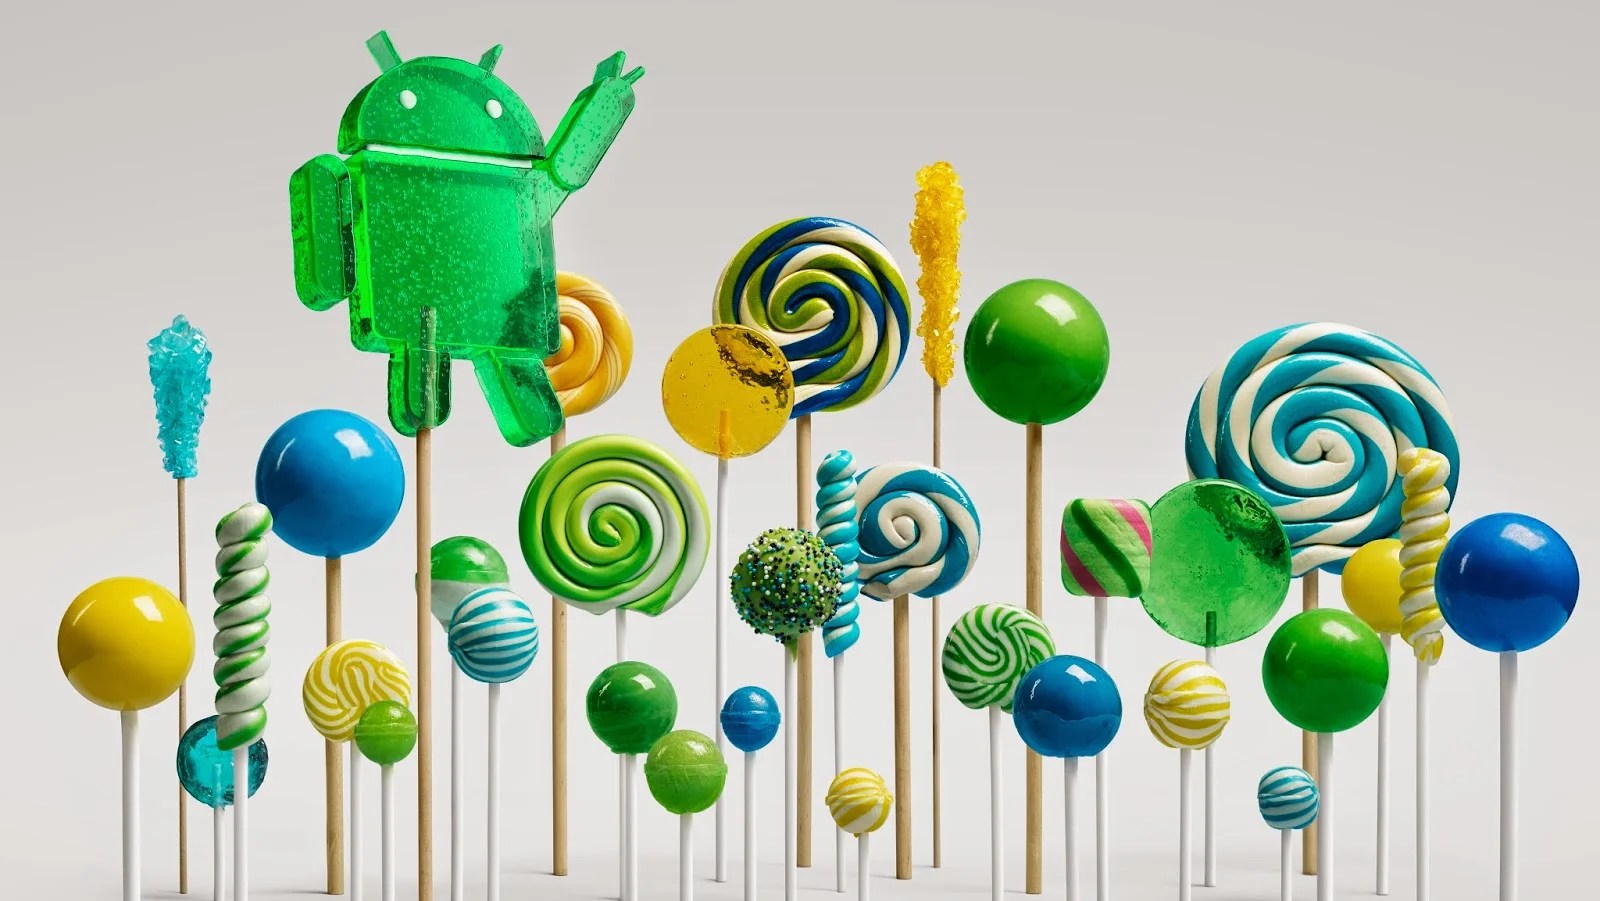 Le SDK et les images système pour Android 5.0 Lollipop disponibles dès demain